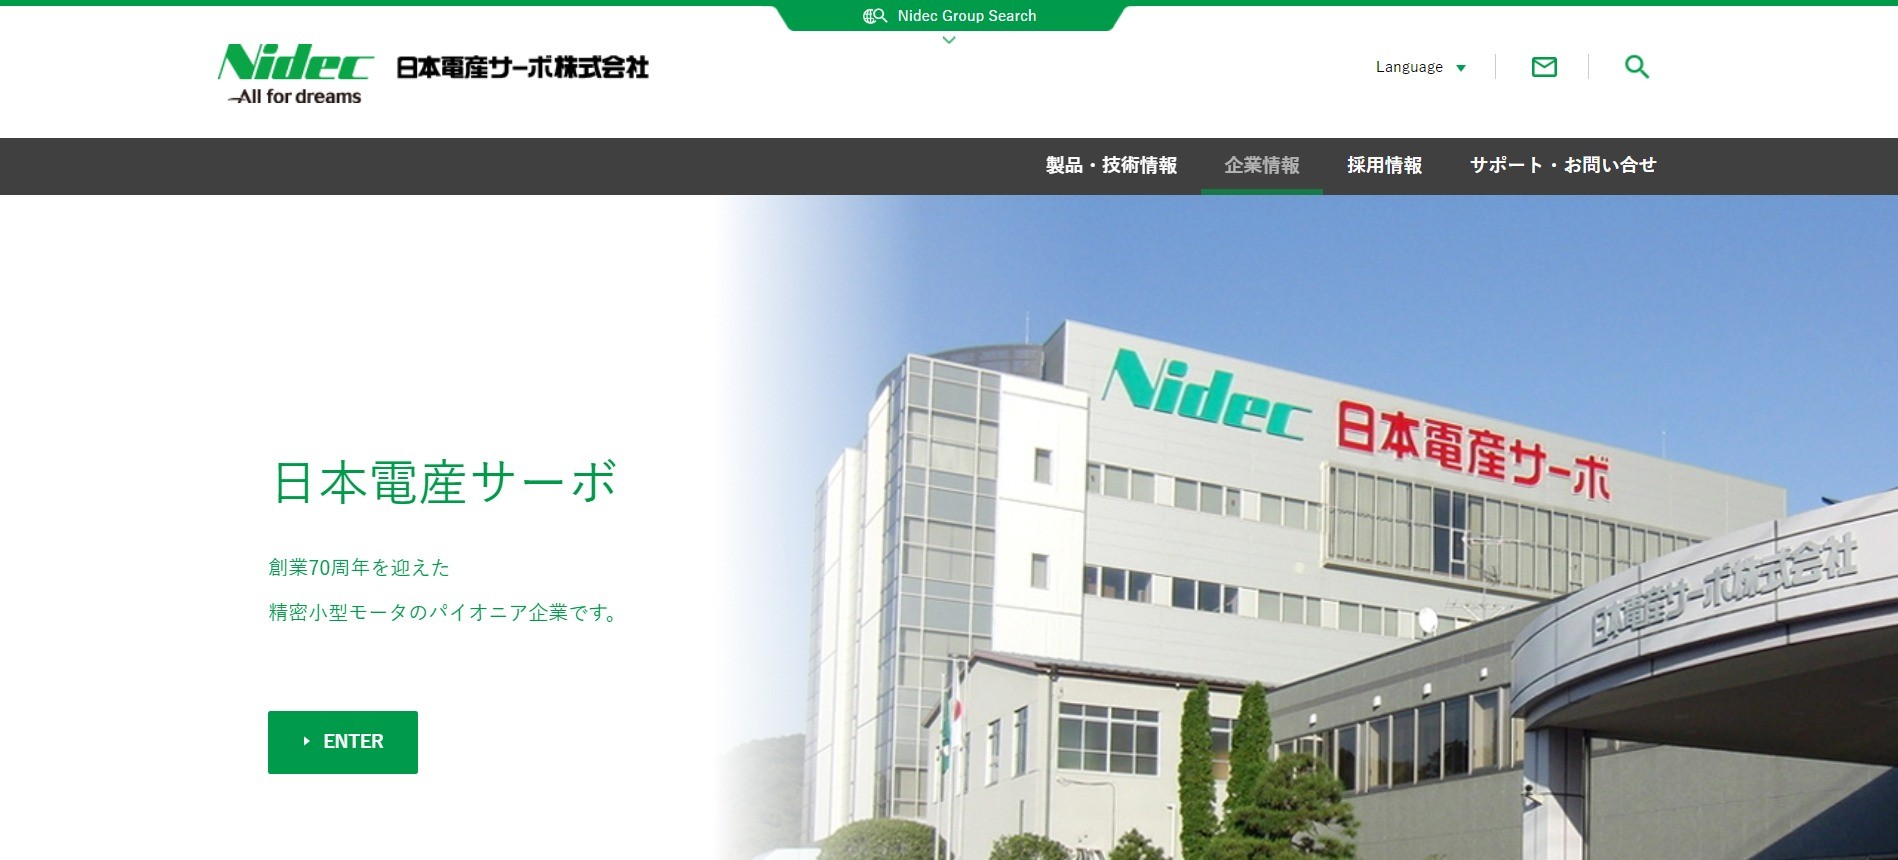 日本電産サーボ株式会社の業務システム開発